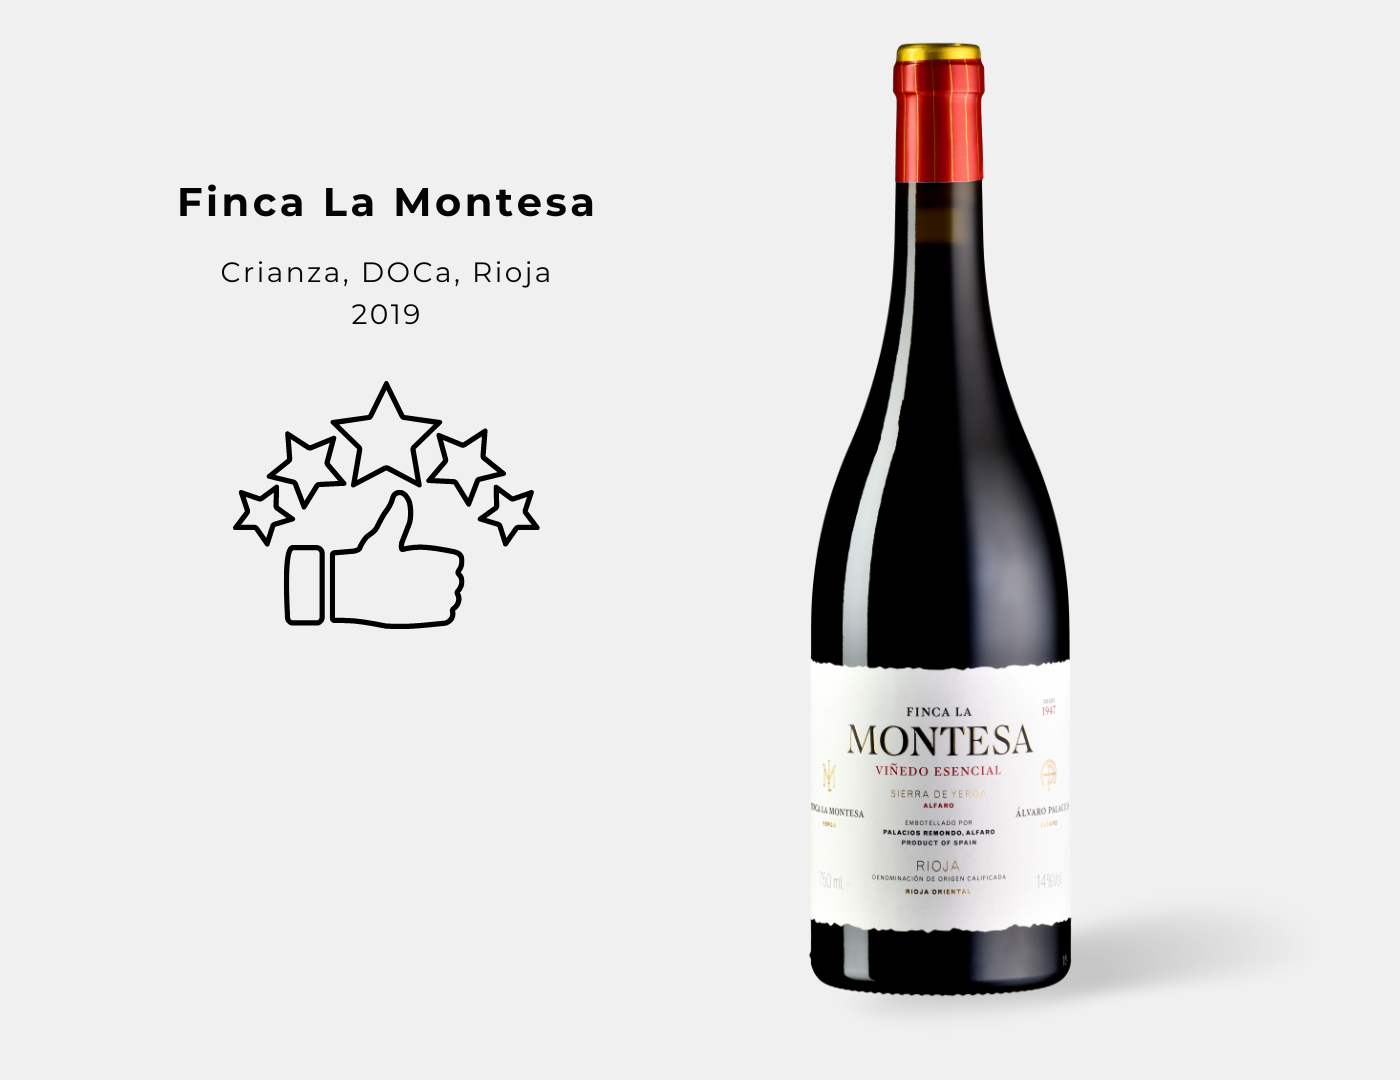 Gute Bewertung für Finca La Montesa 2019